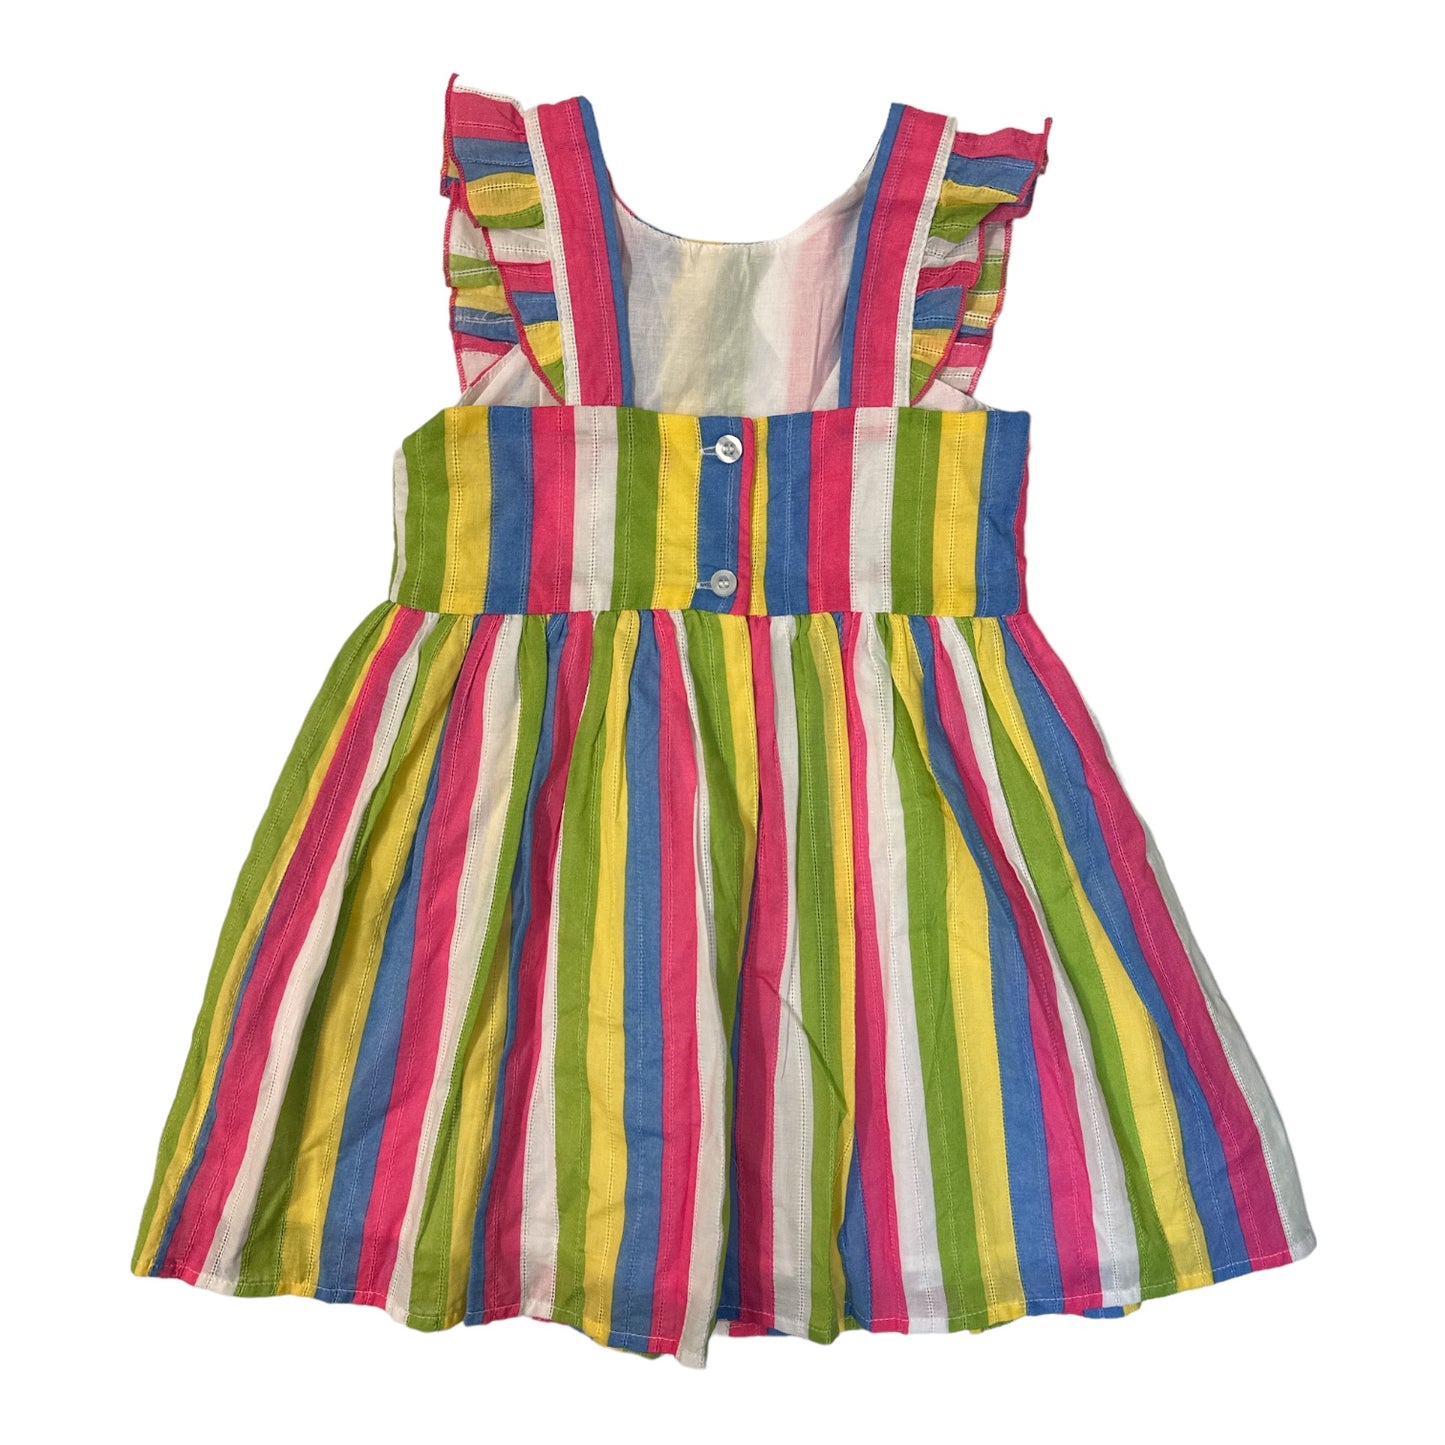 Zunie Girl Girl's Ruffled Sleeveless Lightweight Woven Cotton Dress